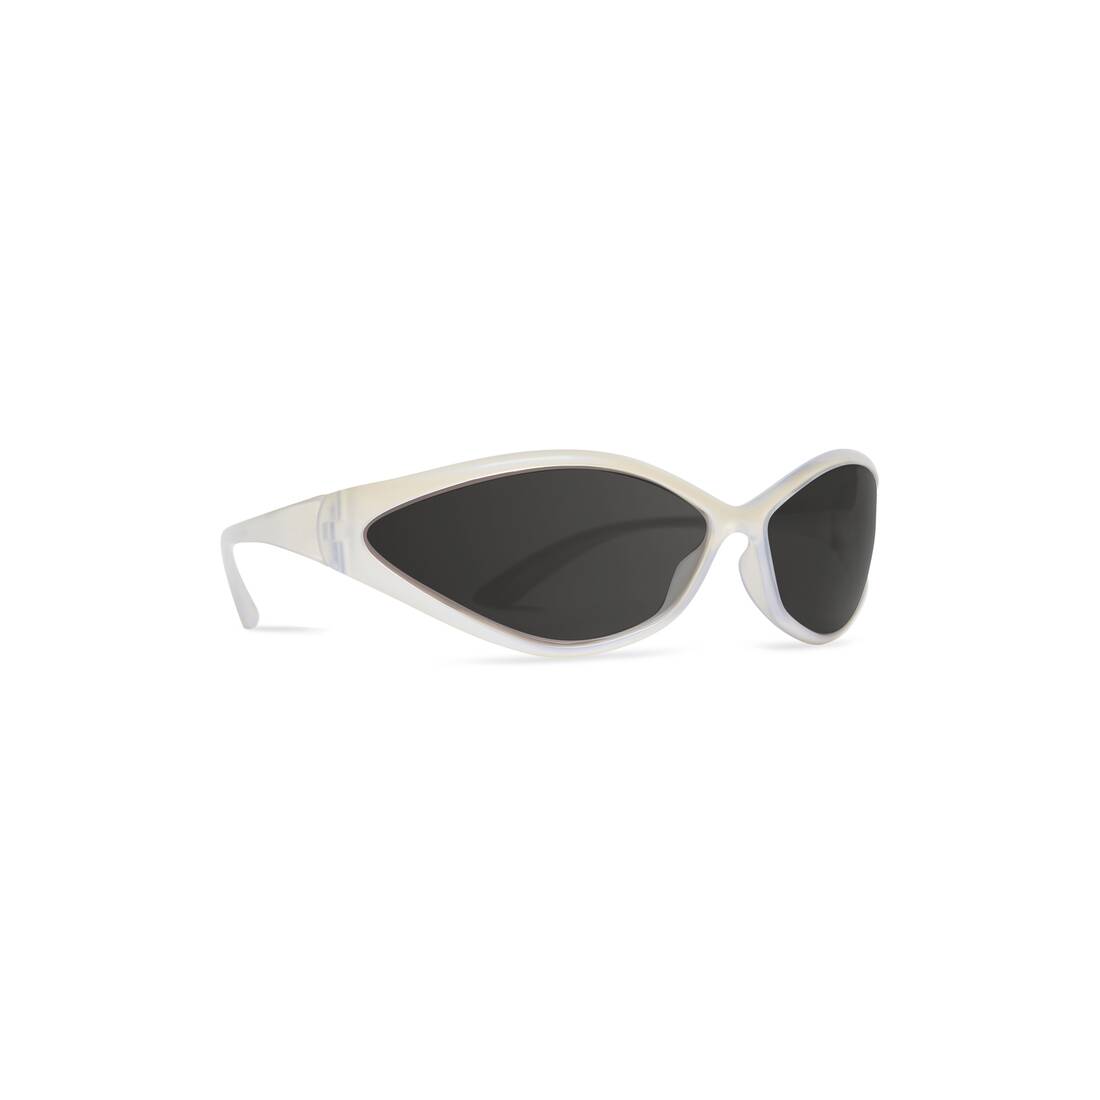 Buy Park Line UV Protected Sport Men's Sunglasses-Black Polarized -PL-5010  at Amazon.in